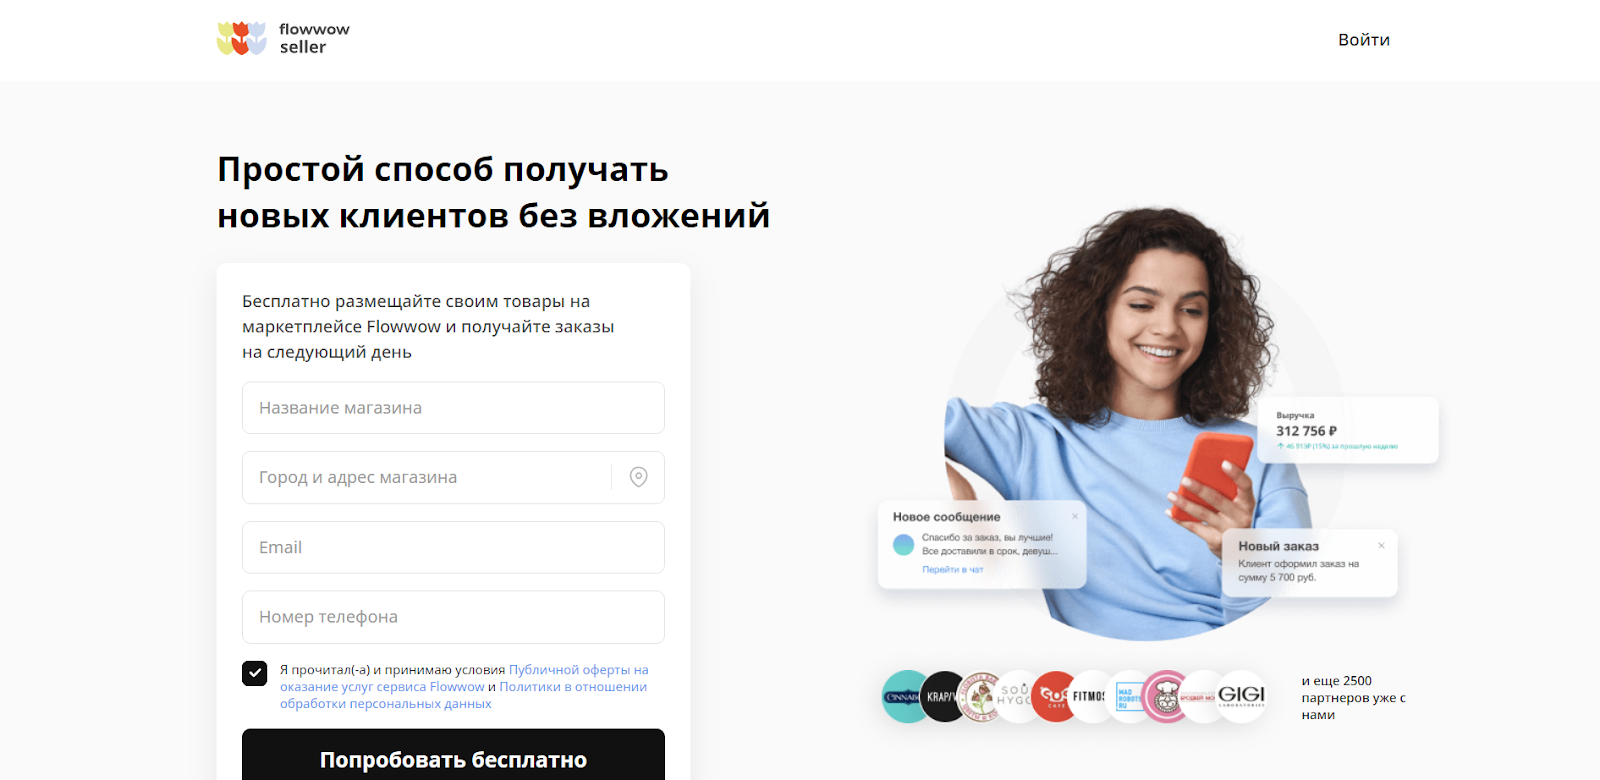 Flowwow - популярный в России маркетплейс